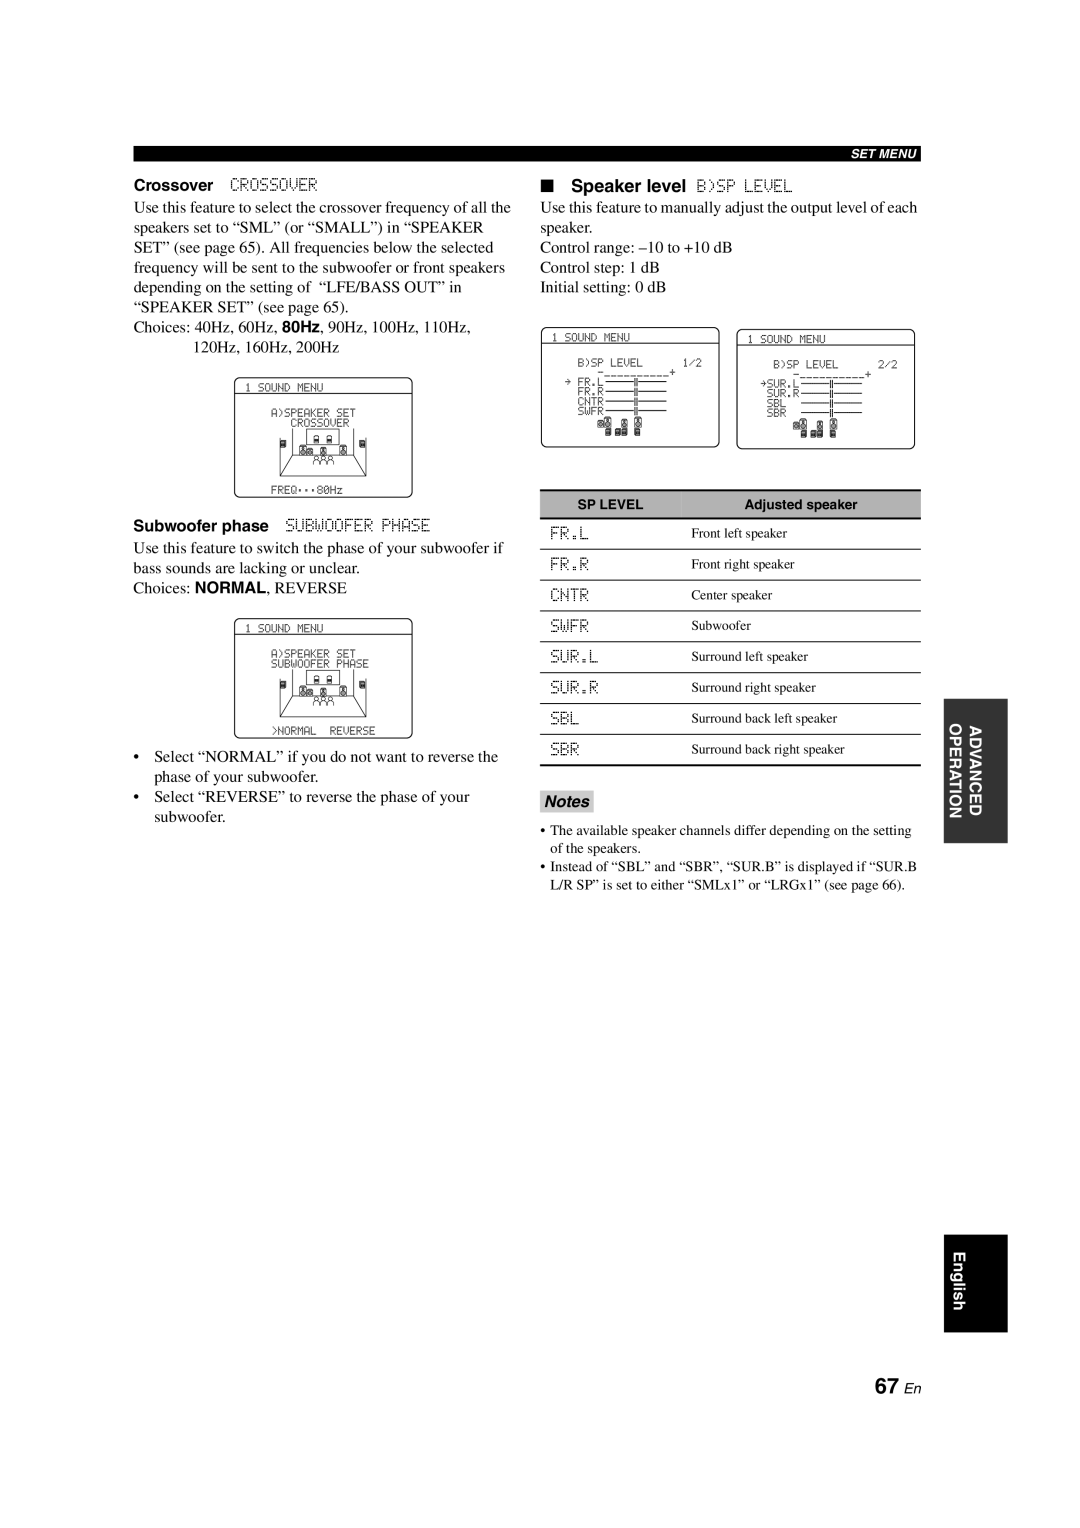 Yamaha HTR-6150 owner manual 67 En, Speaker level BSP LEVEL, Notes 